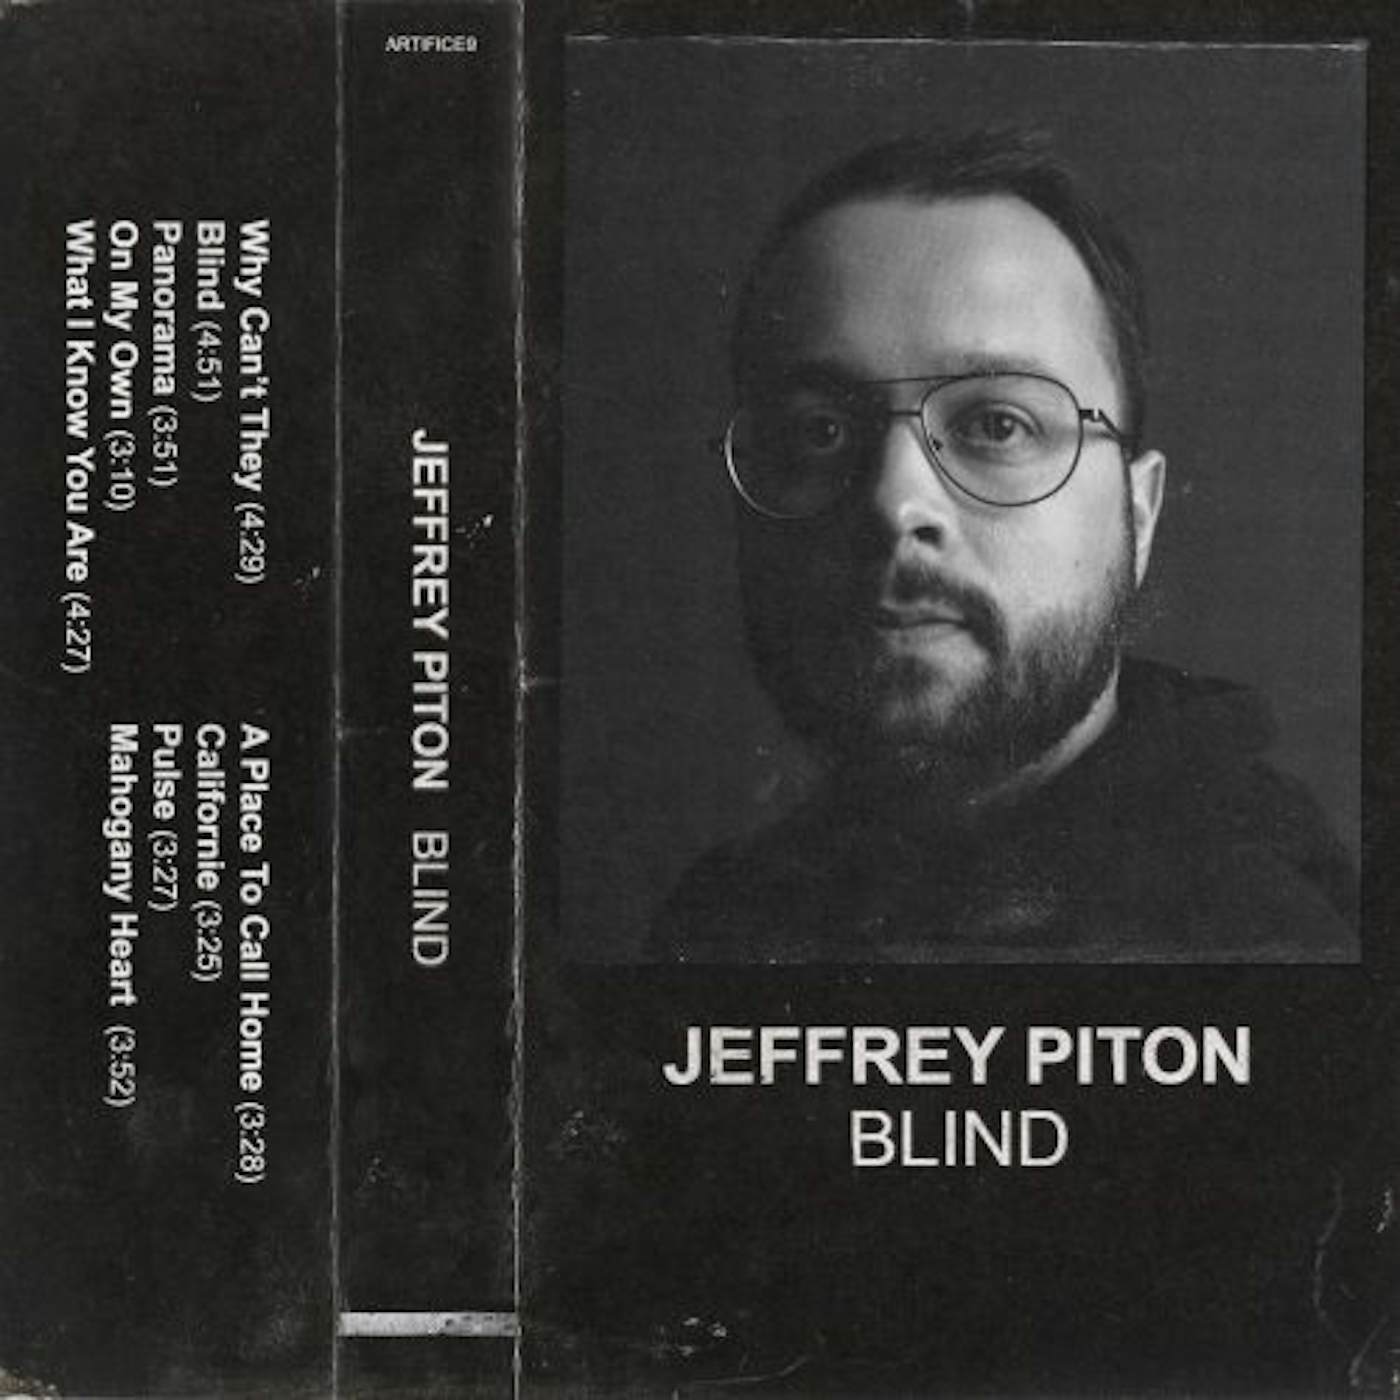 Jeffrey Piton BLIND CD